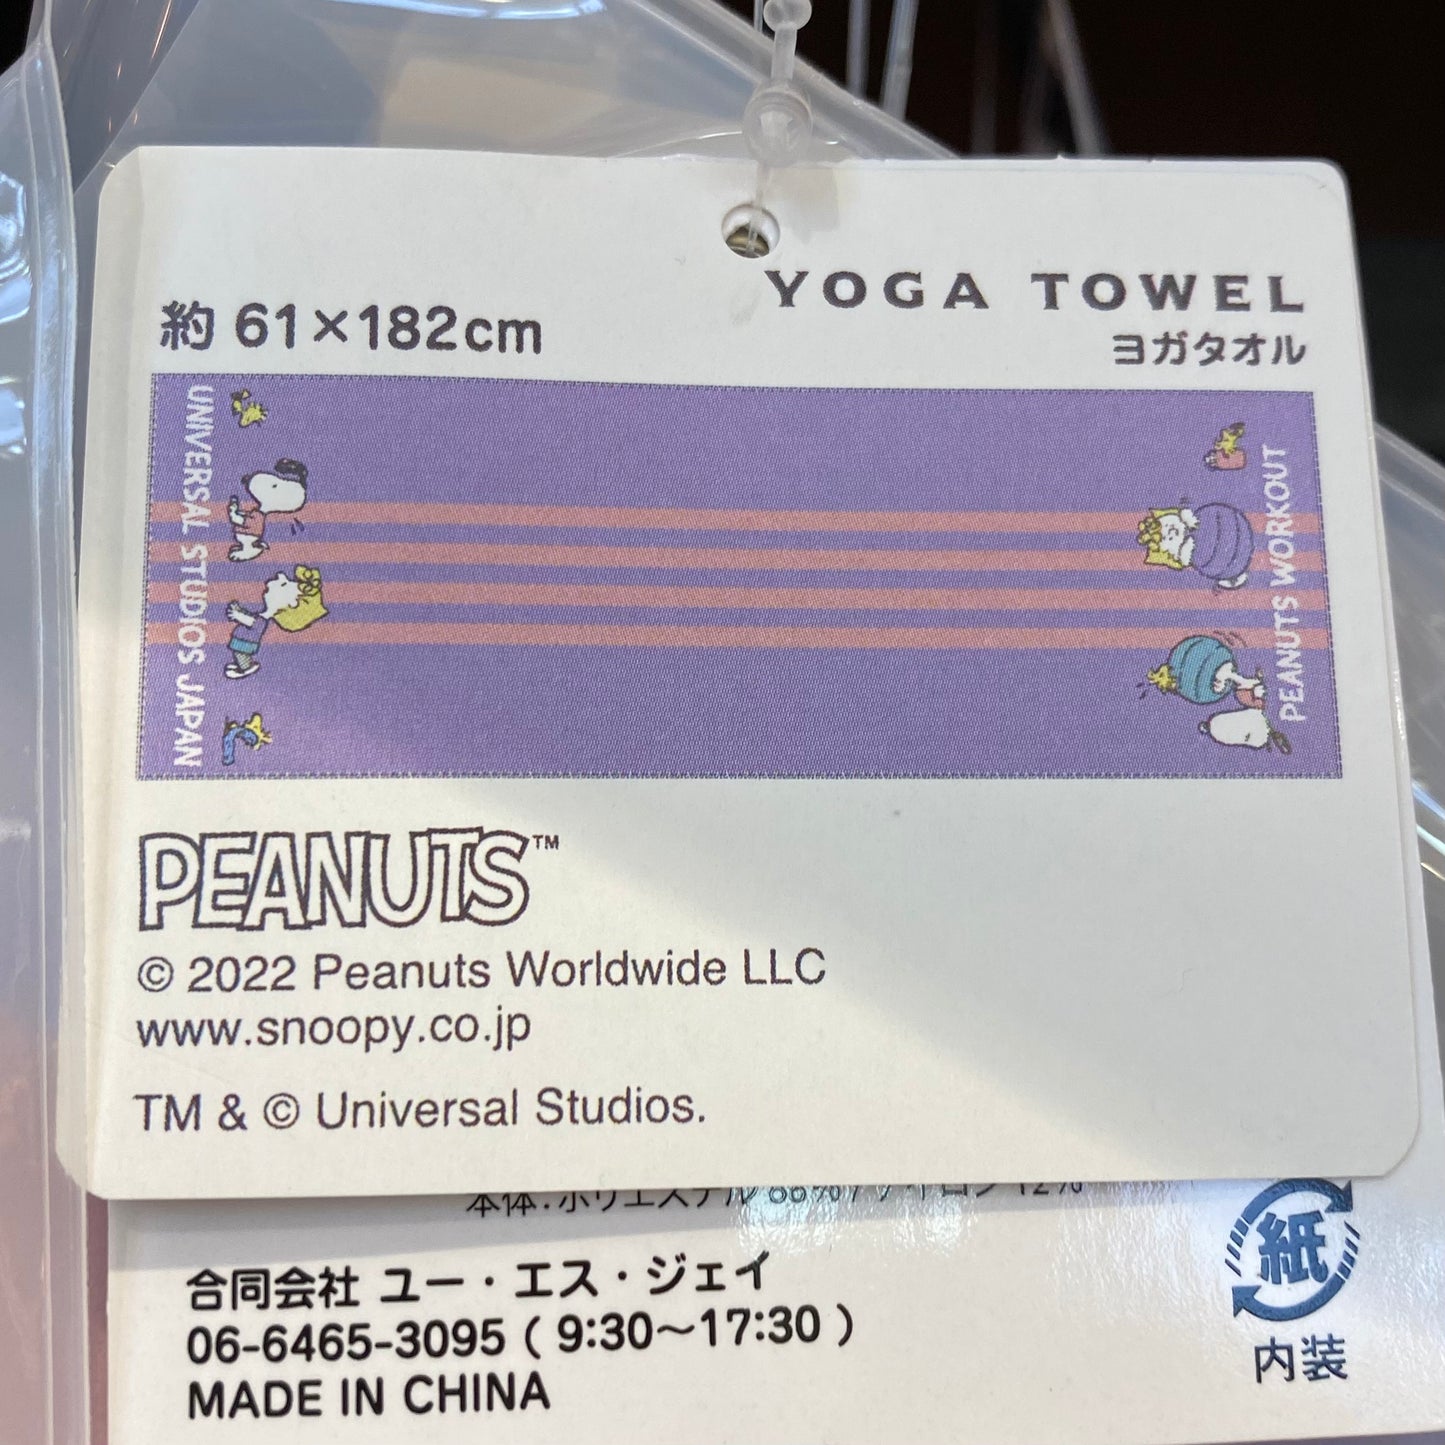 【Order】USJ Peanuts Workout Series